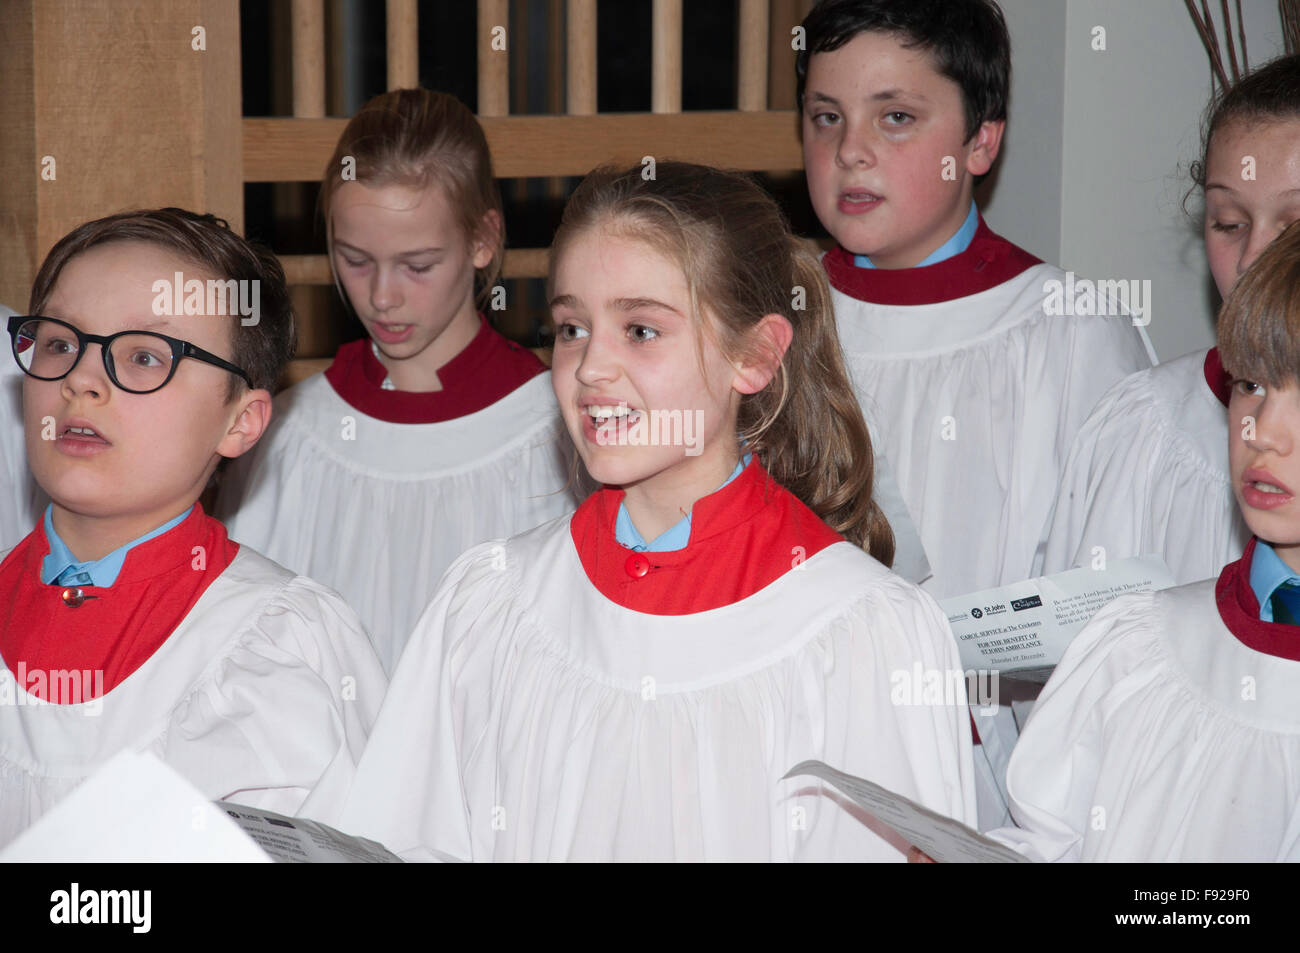 Schule Kinderchor singen Weihnachten Weihnachtslieder, Winkfield Zeile, Berkshire, England, Vereinigtes Königreich Stockfoto